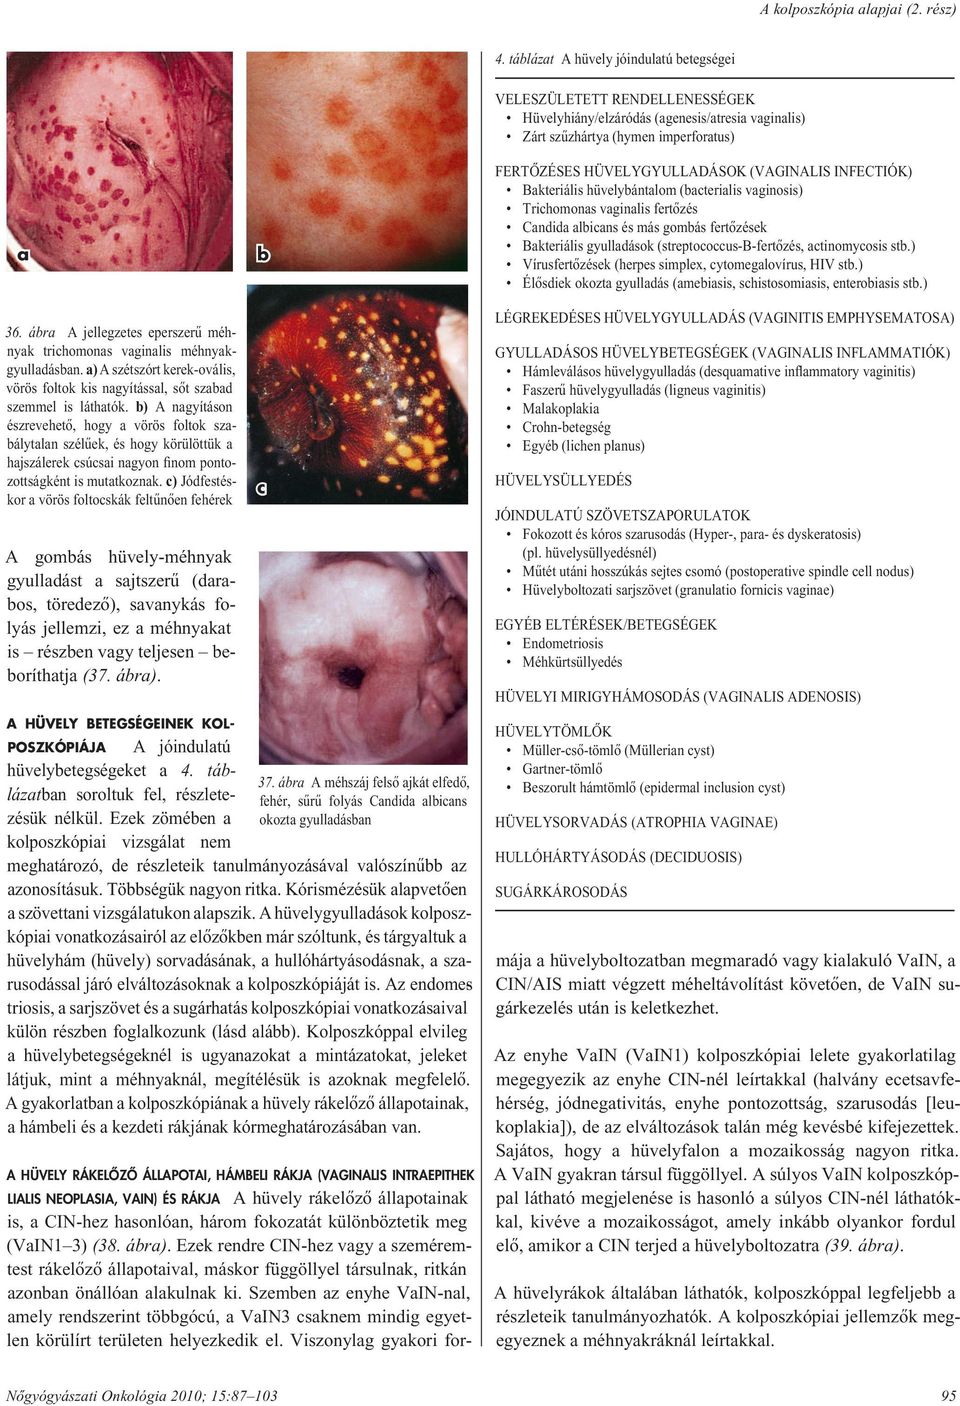 (VAGINALIS INFECTIÓK) Bakteriális hüvelybántalom (bacterialis vaginosis) Trichomonas vaginalis fertôzés Candida albicans és más gombás fertôzések Bakteriális gyulladások (streptococcus-b-fertôzés,